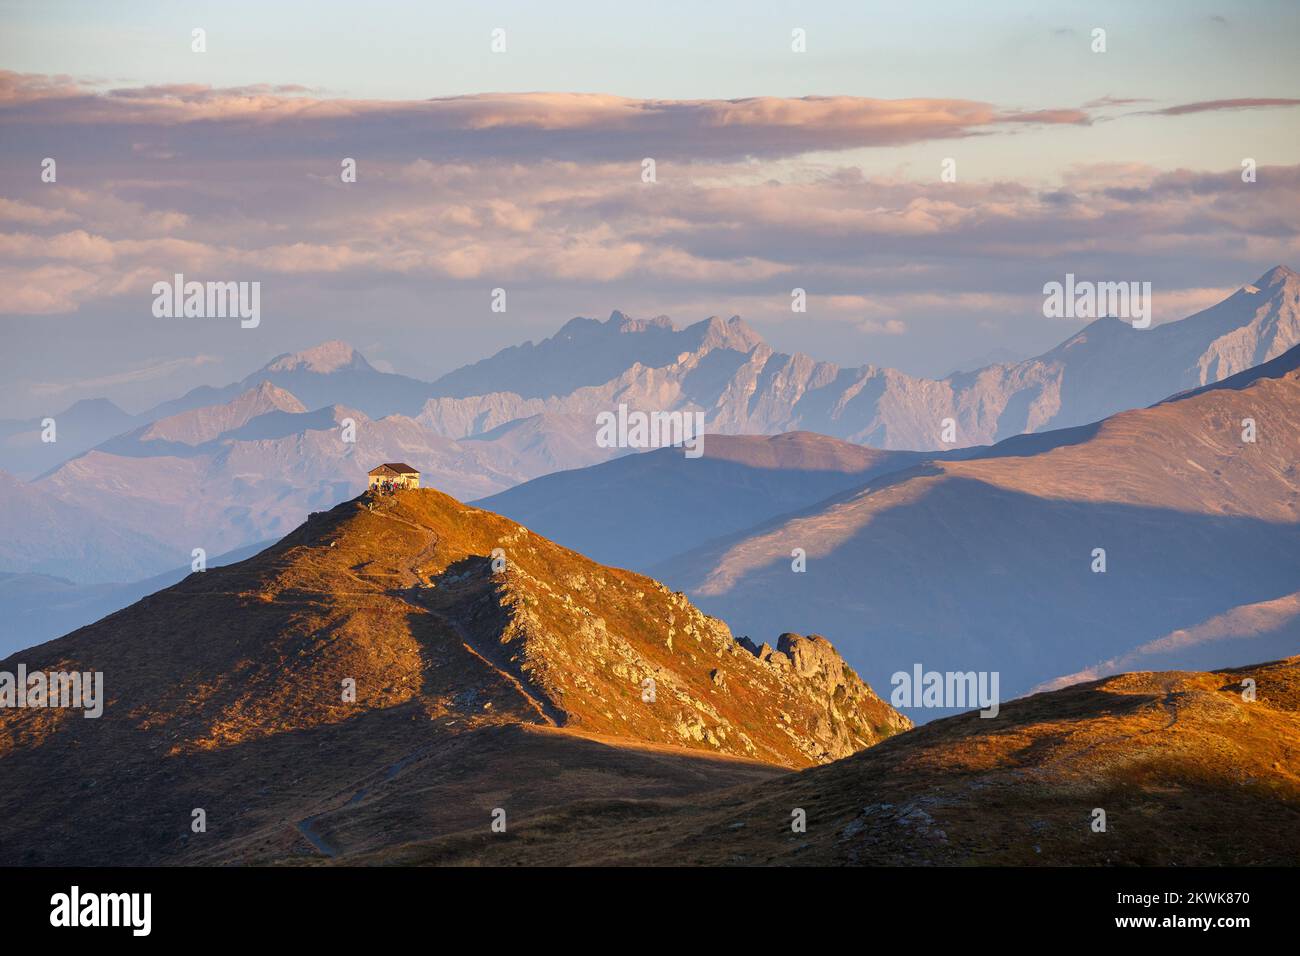 Sonnenlicht bei Sonnenaufgang. Monte Elmo (Helm) im Puster-Tal in Südtirol, Alpi Carniche. Gebirgsprofile zwischen Österreich und Italien. Stockfoto